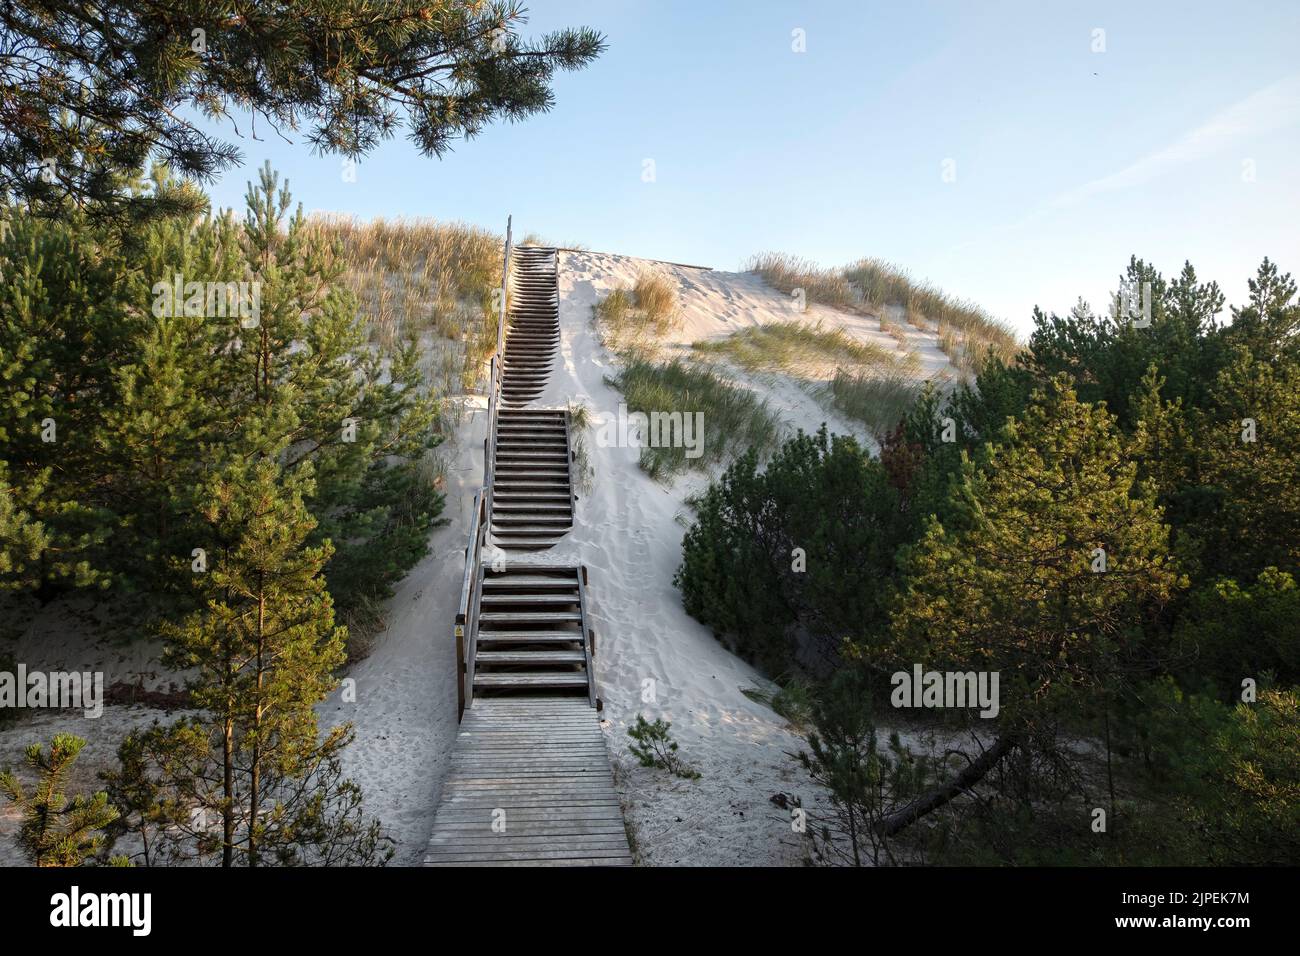 Holztreppe zum Strand mit Sand bedeckt. Lubiatowo Dünen, Naturpark mit einem geschützten Küstenstreifen an der Ostsee. Stockfoto